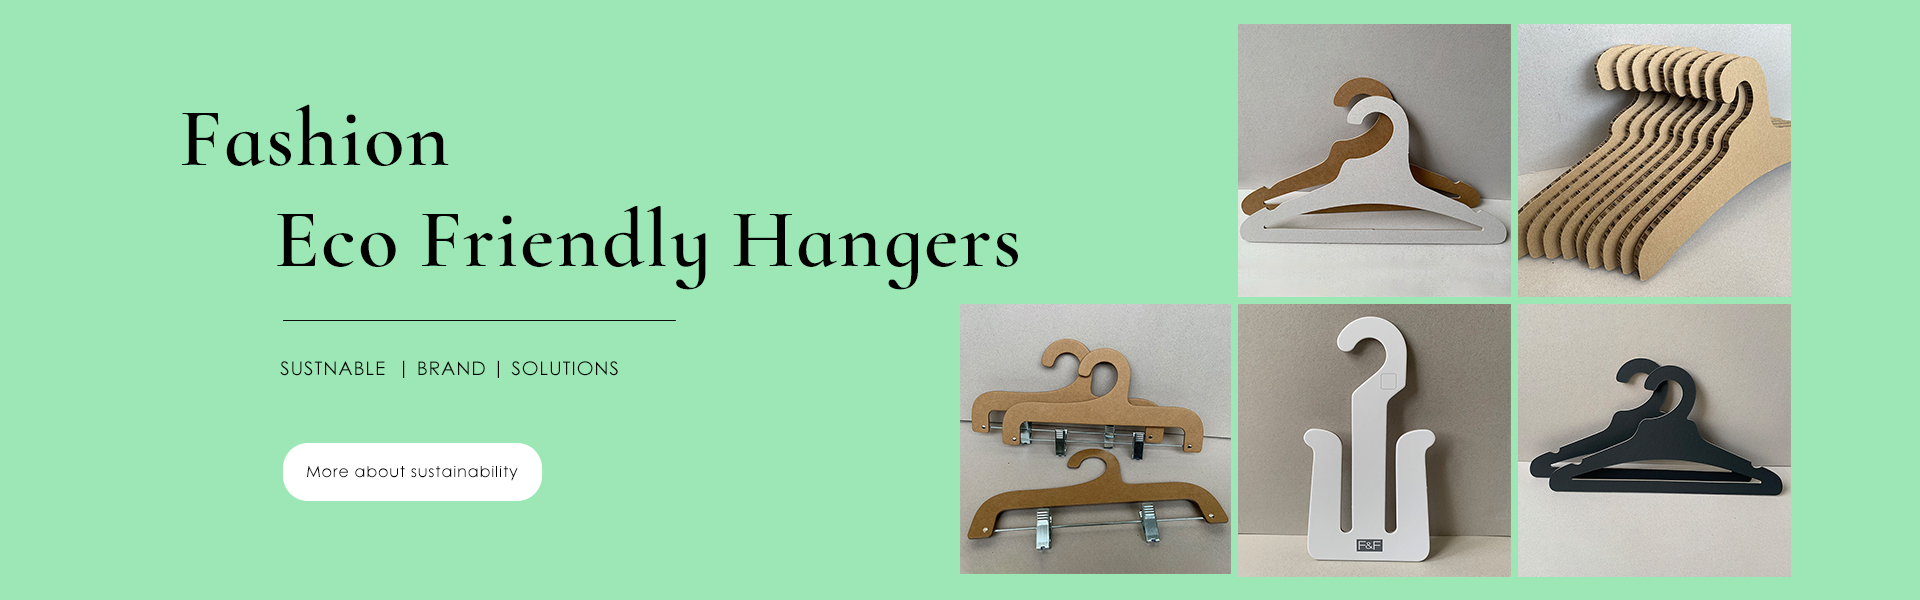 Fashion Eco Friendly Cardboard hangers